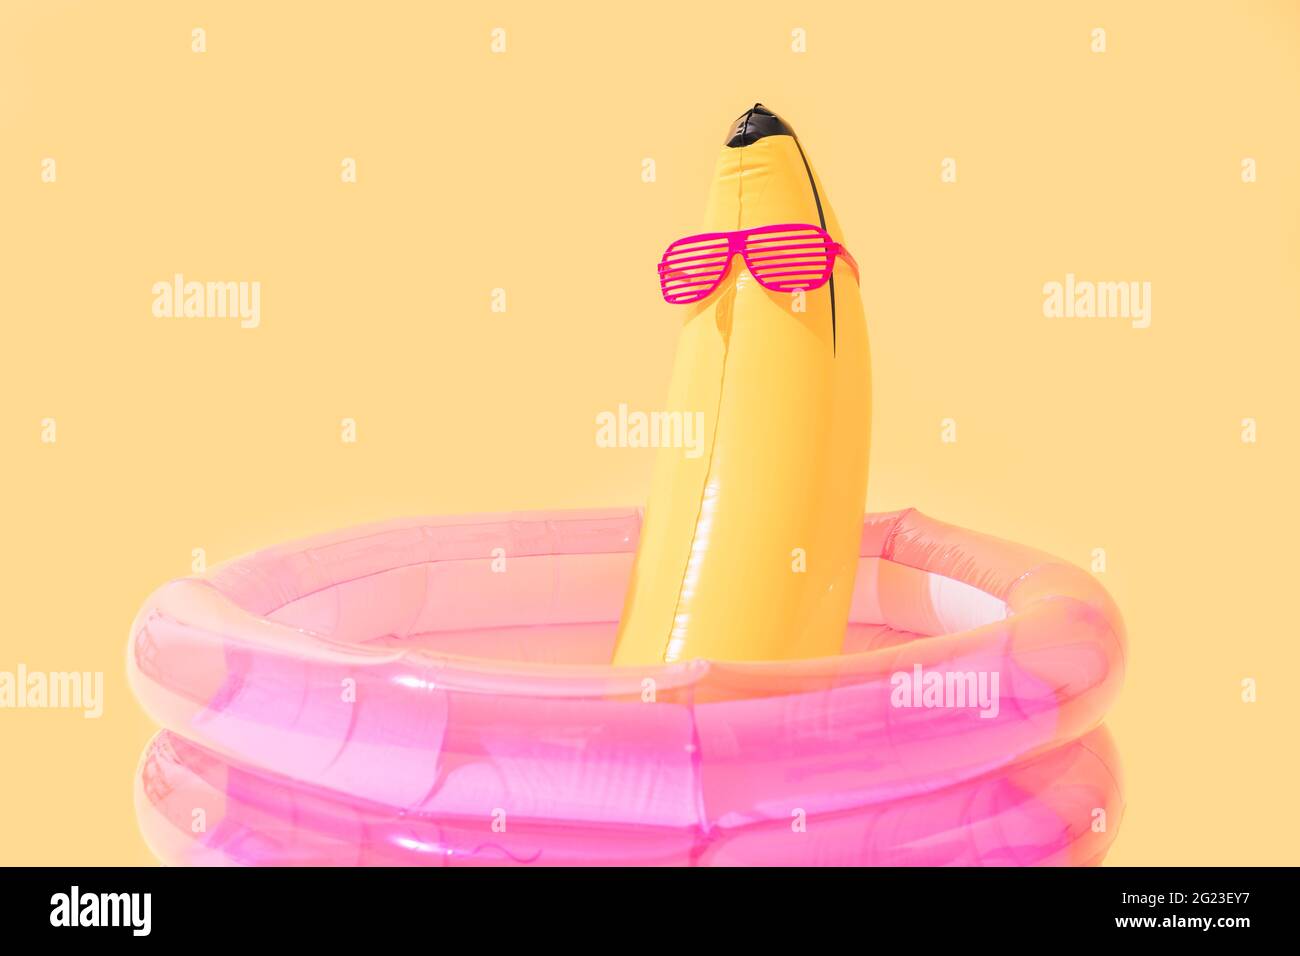 Kinderbecken mit einer bananenförmigen aufblasbaren Banane mit Sonnenbrille auf gelbem Hintergrund. Stockfoto